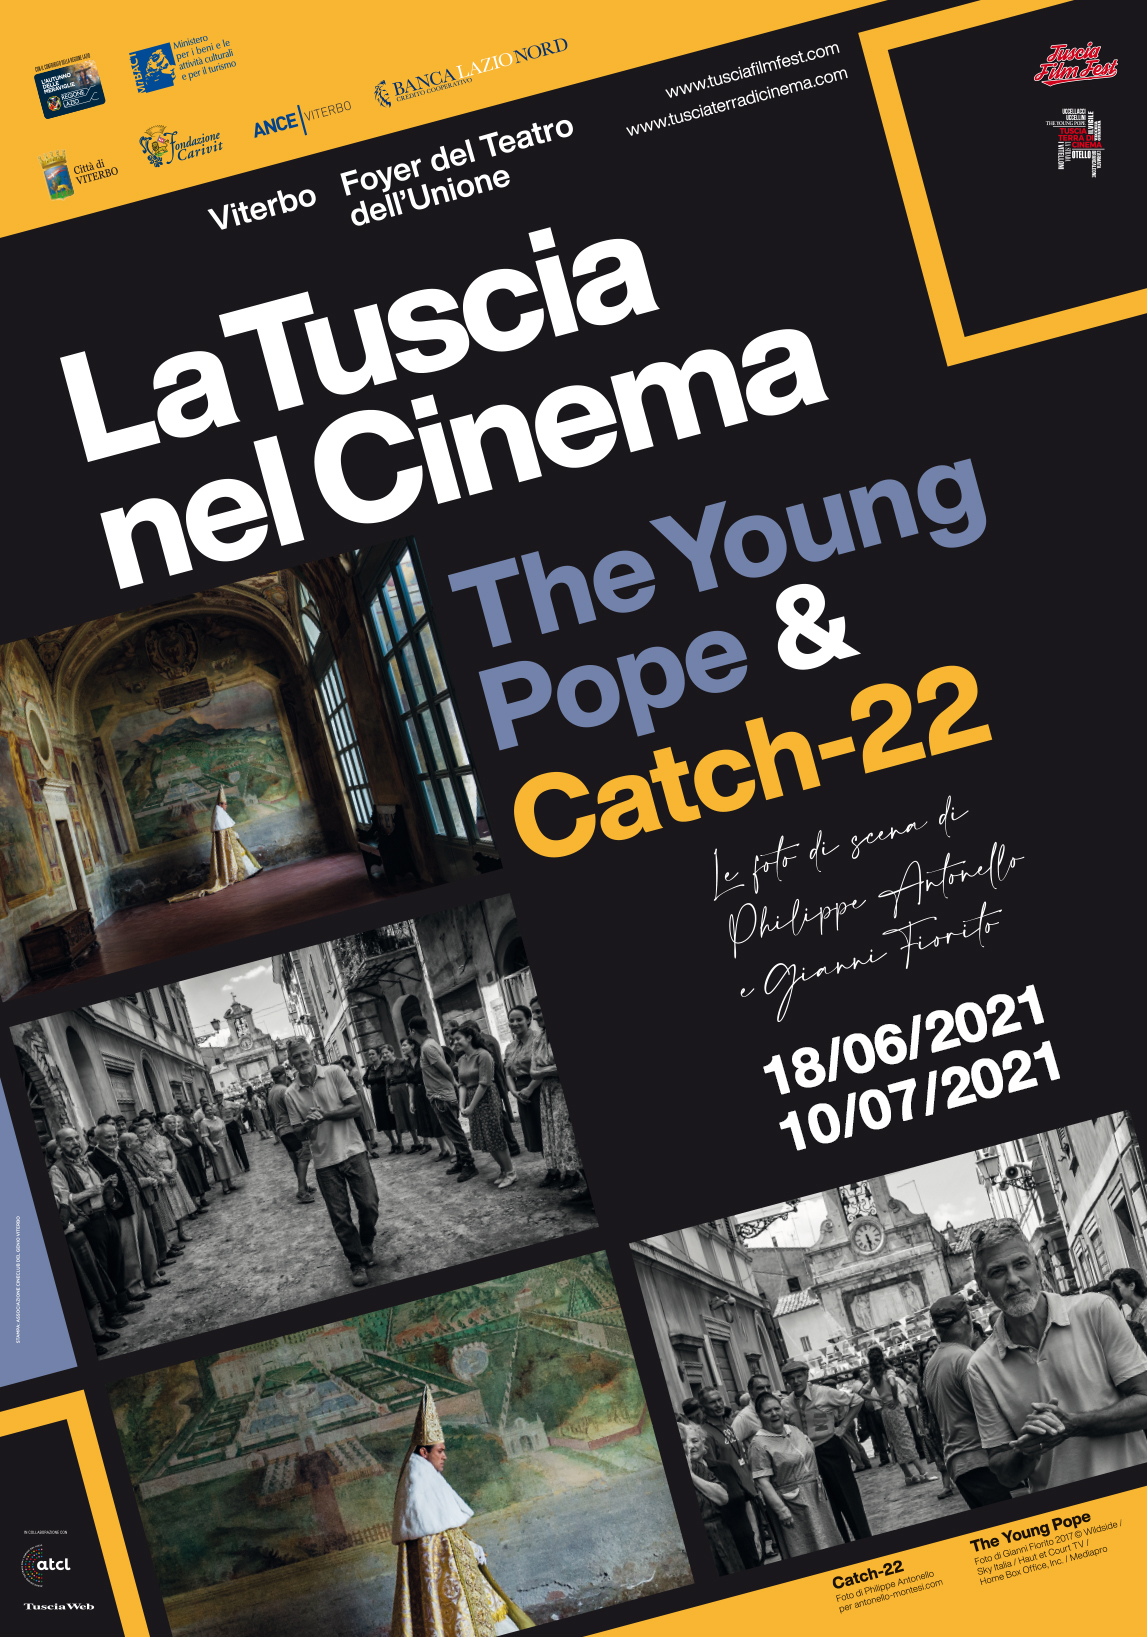 Tuscia nel cinema 2021, Tuscia mostra fotografica, Teatro dell'Unione di Viterbo